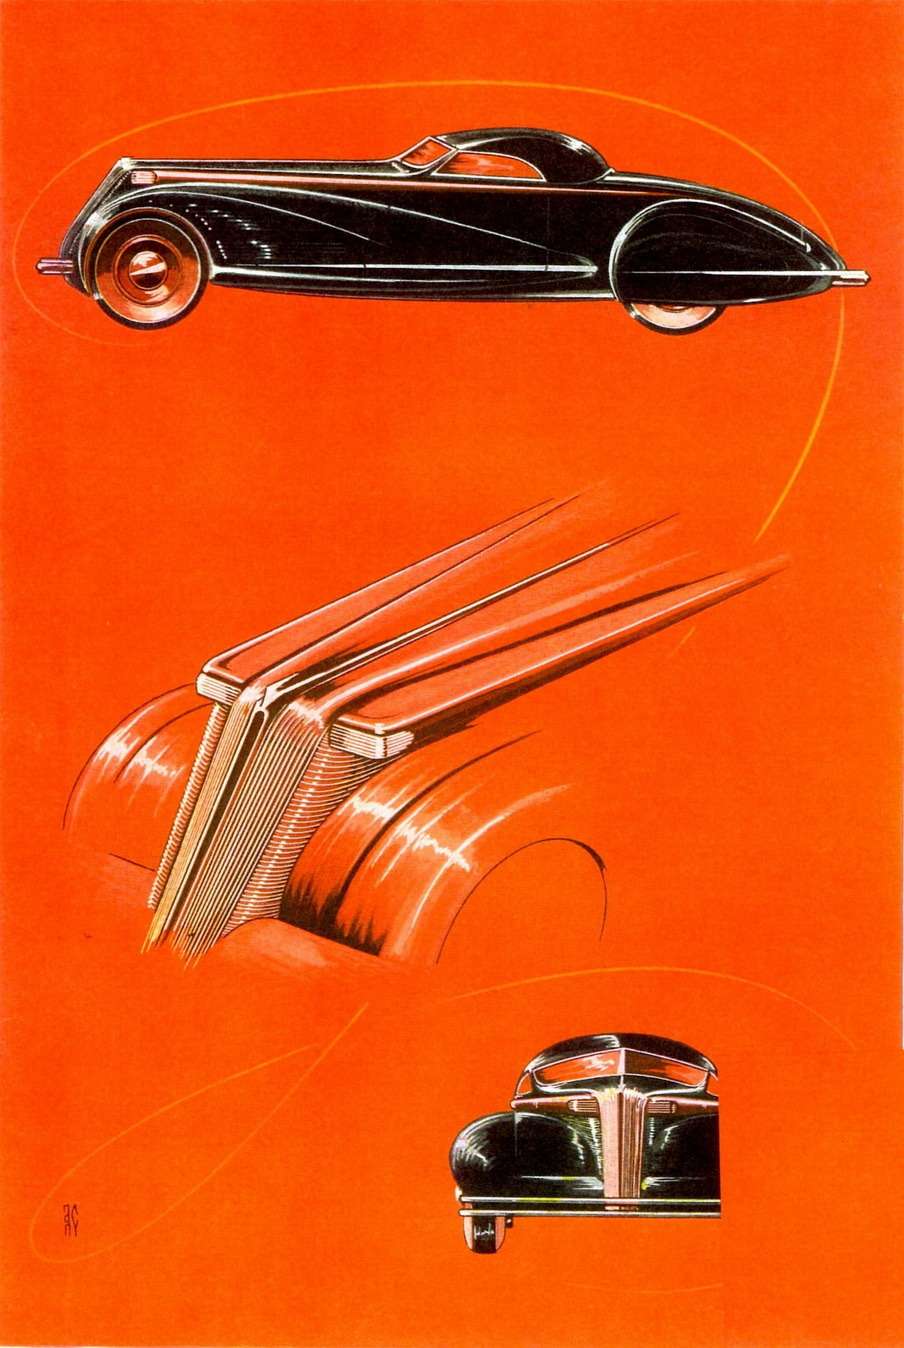 С января 1934 года Алексис де Сахновски возникает в титуле мужского журнала Esquire в качестве ведущего раздела техники и механизмов. Он насыщает журнал иллюстрациями настоящих и вымышленных автомобилей